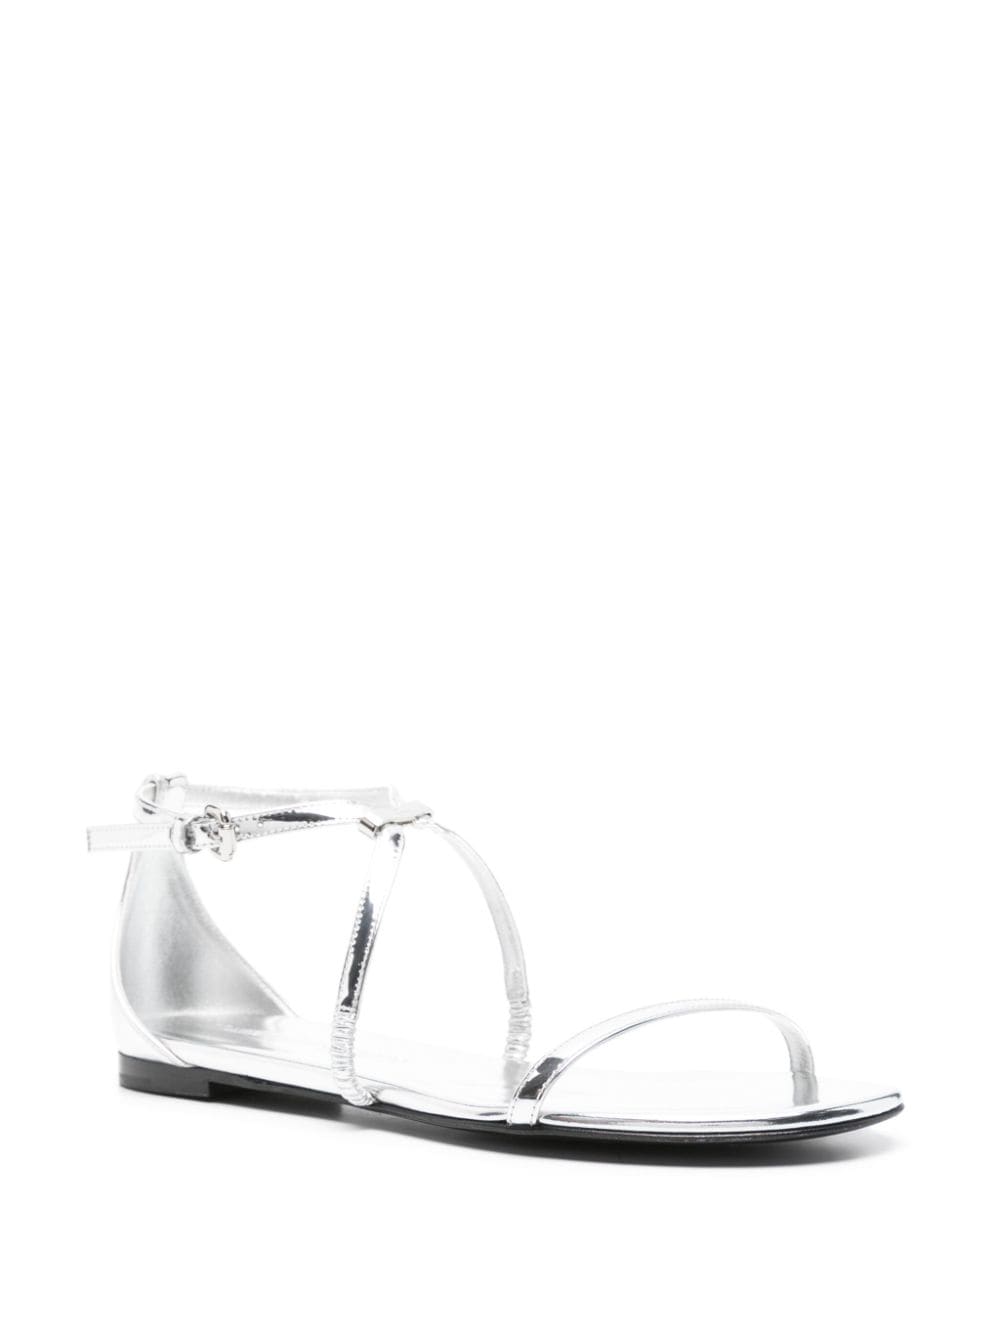 Image 2 of Alexander McQueen metallic leather sandals